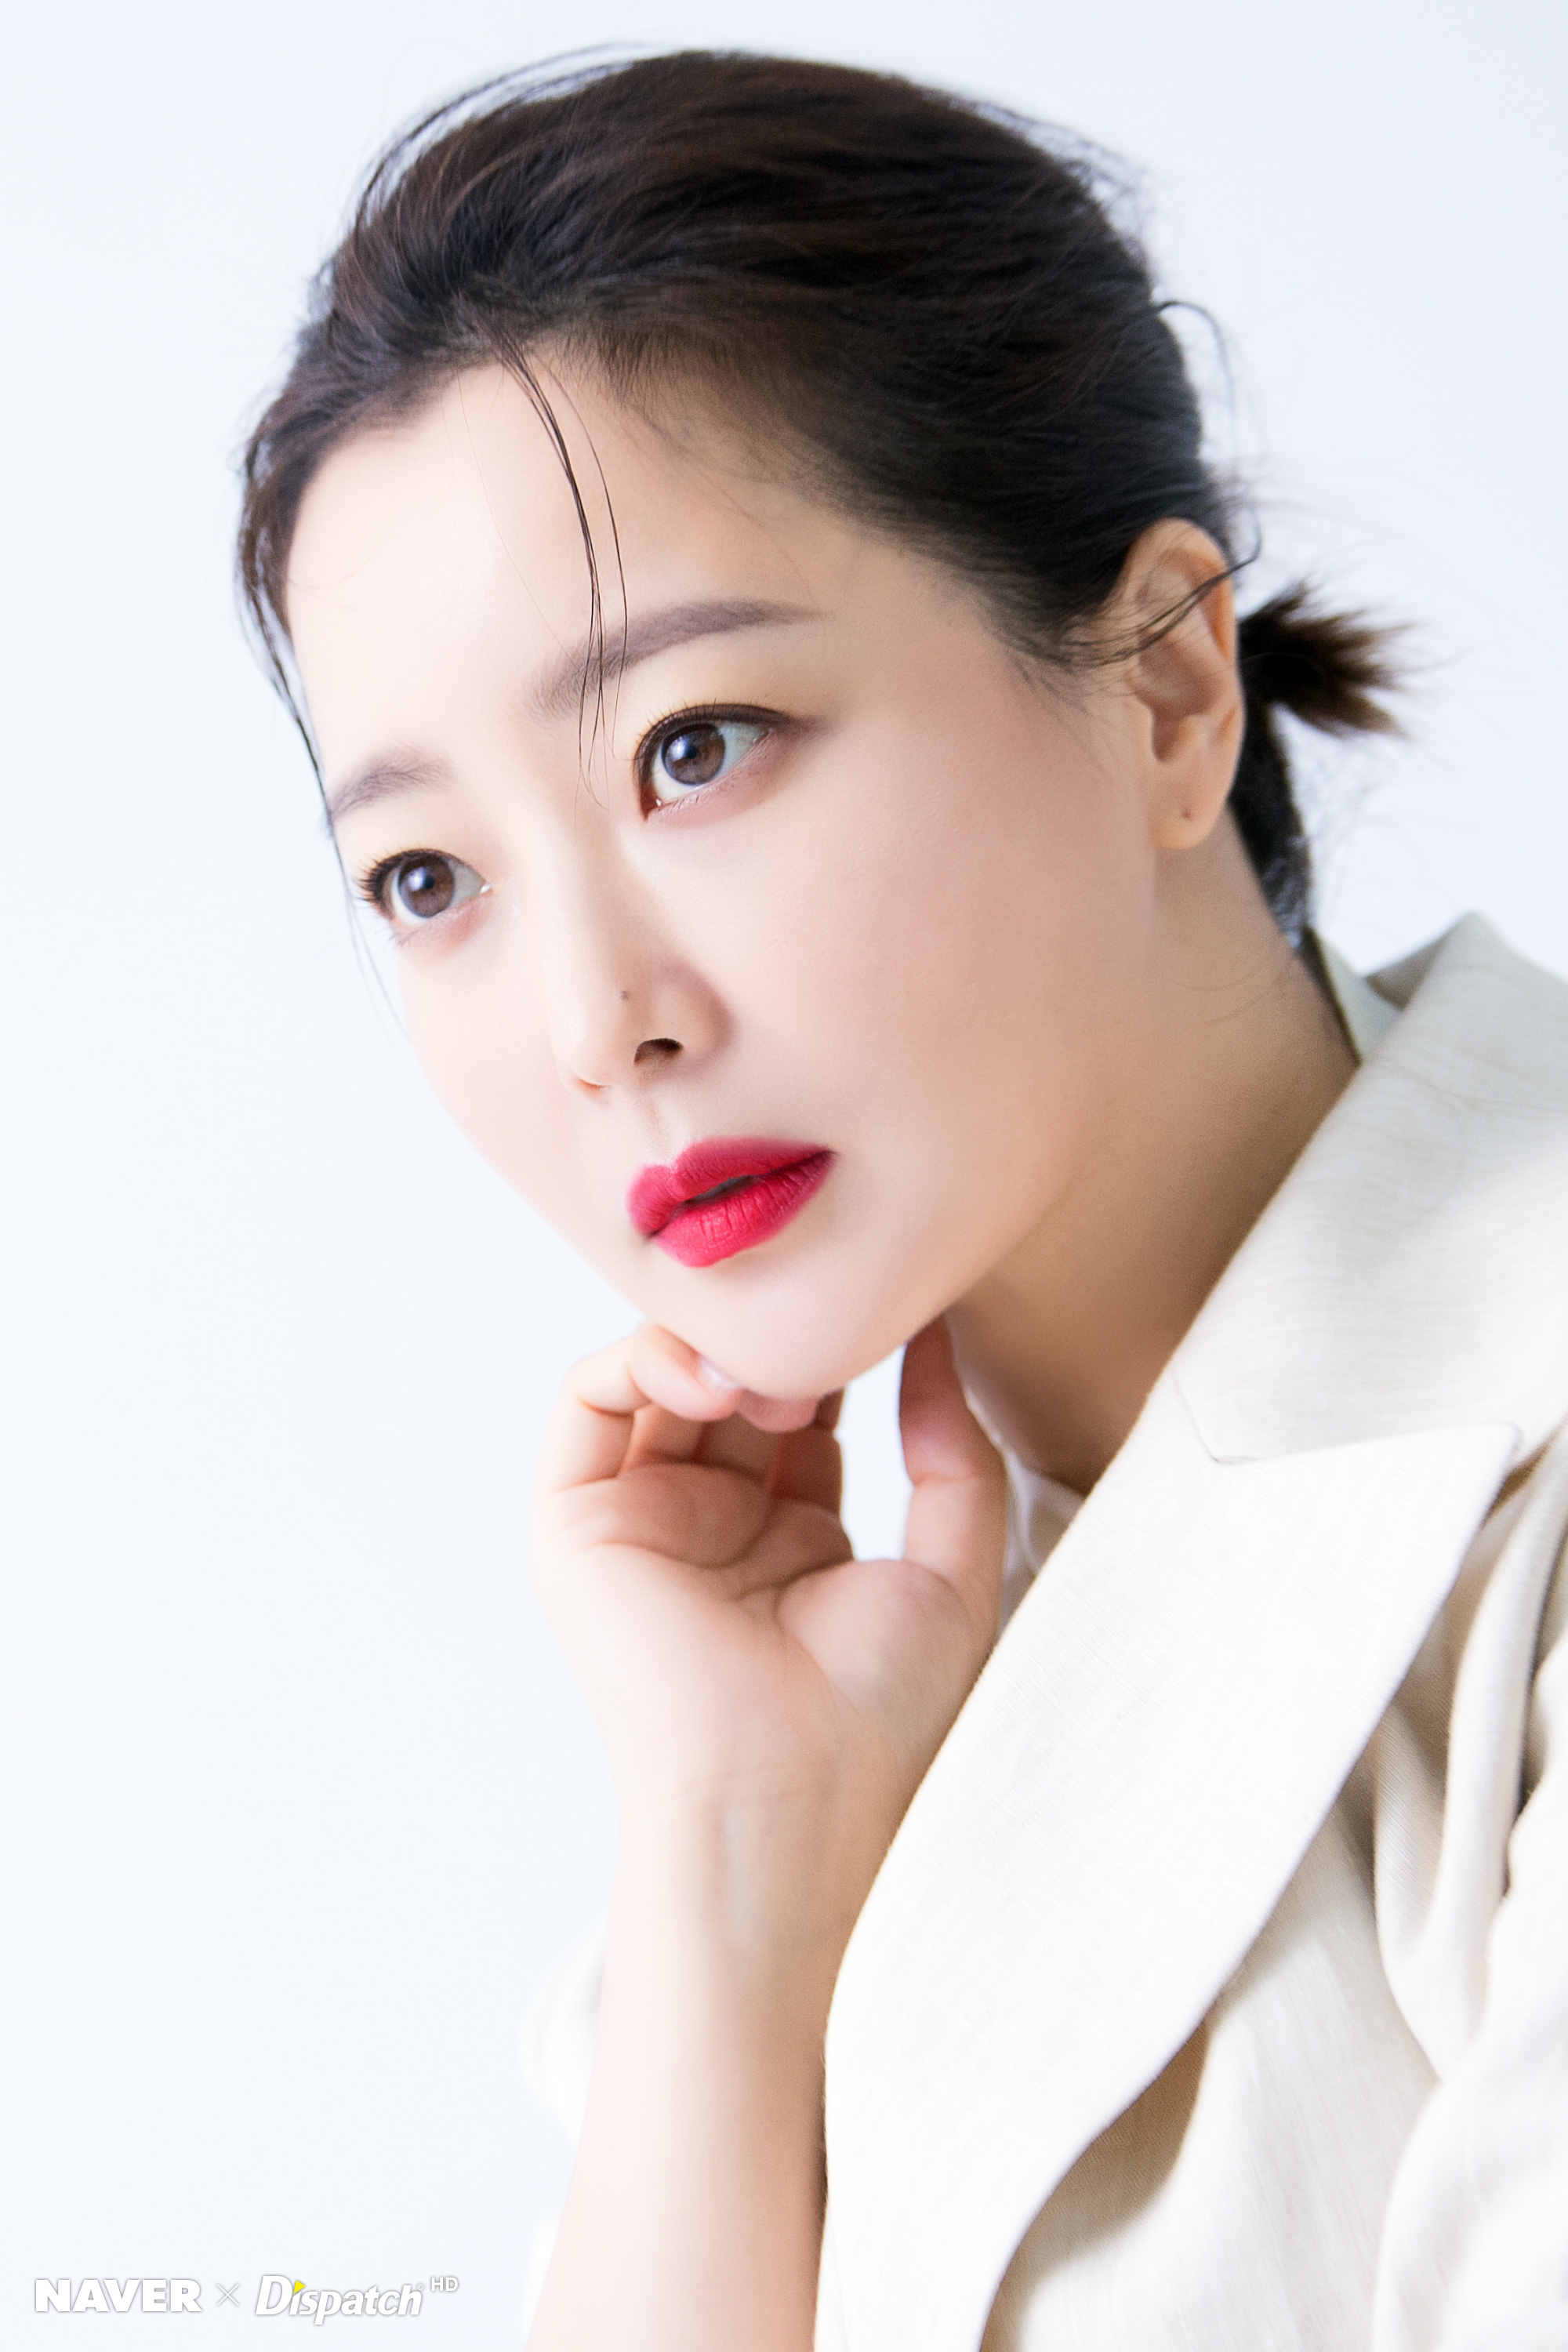 Kim Seon Ho Naver Dispatch - Korean Idol